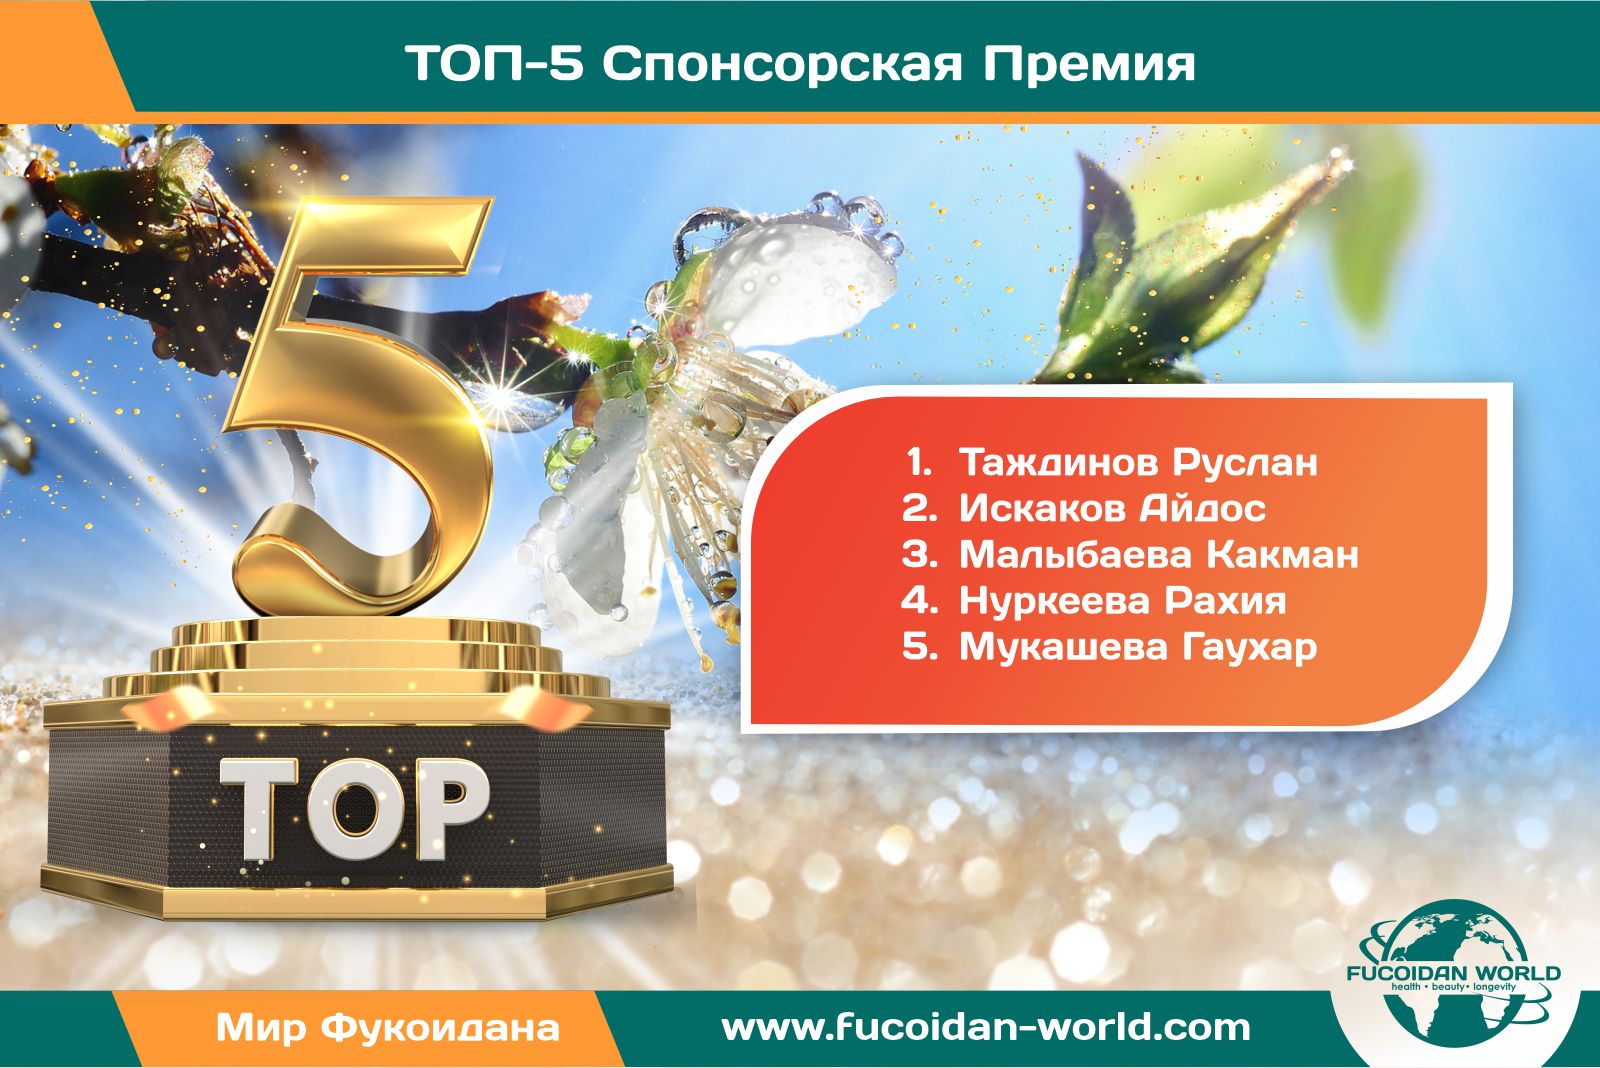 ТОП-5 компании «Fucoidan World»